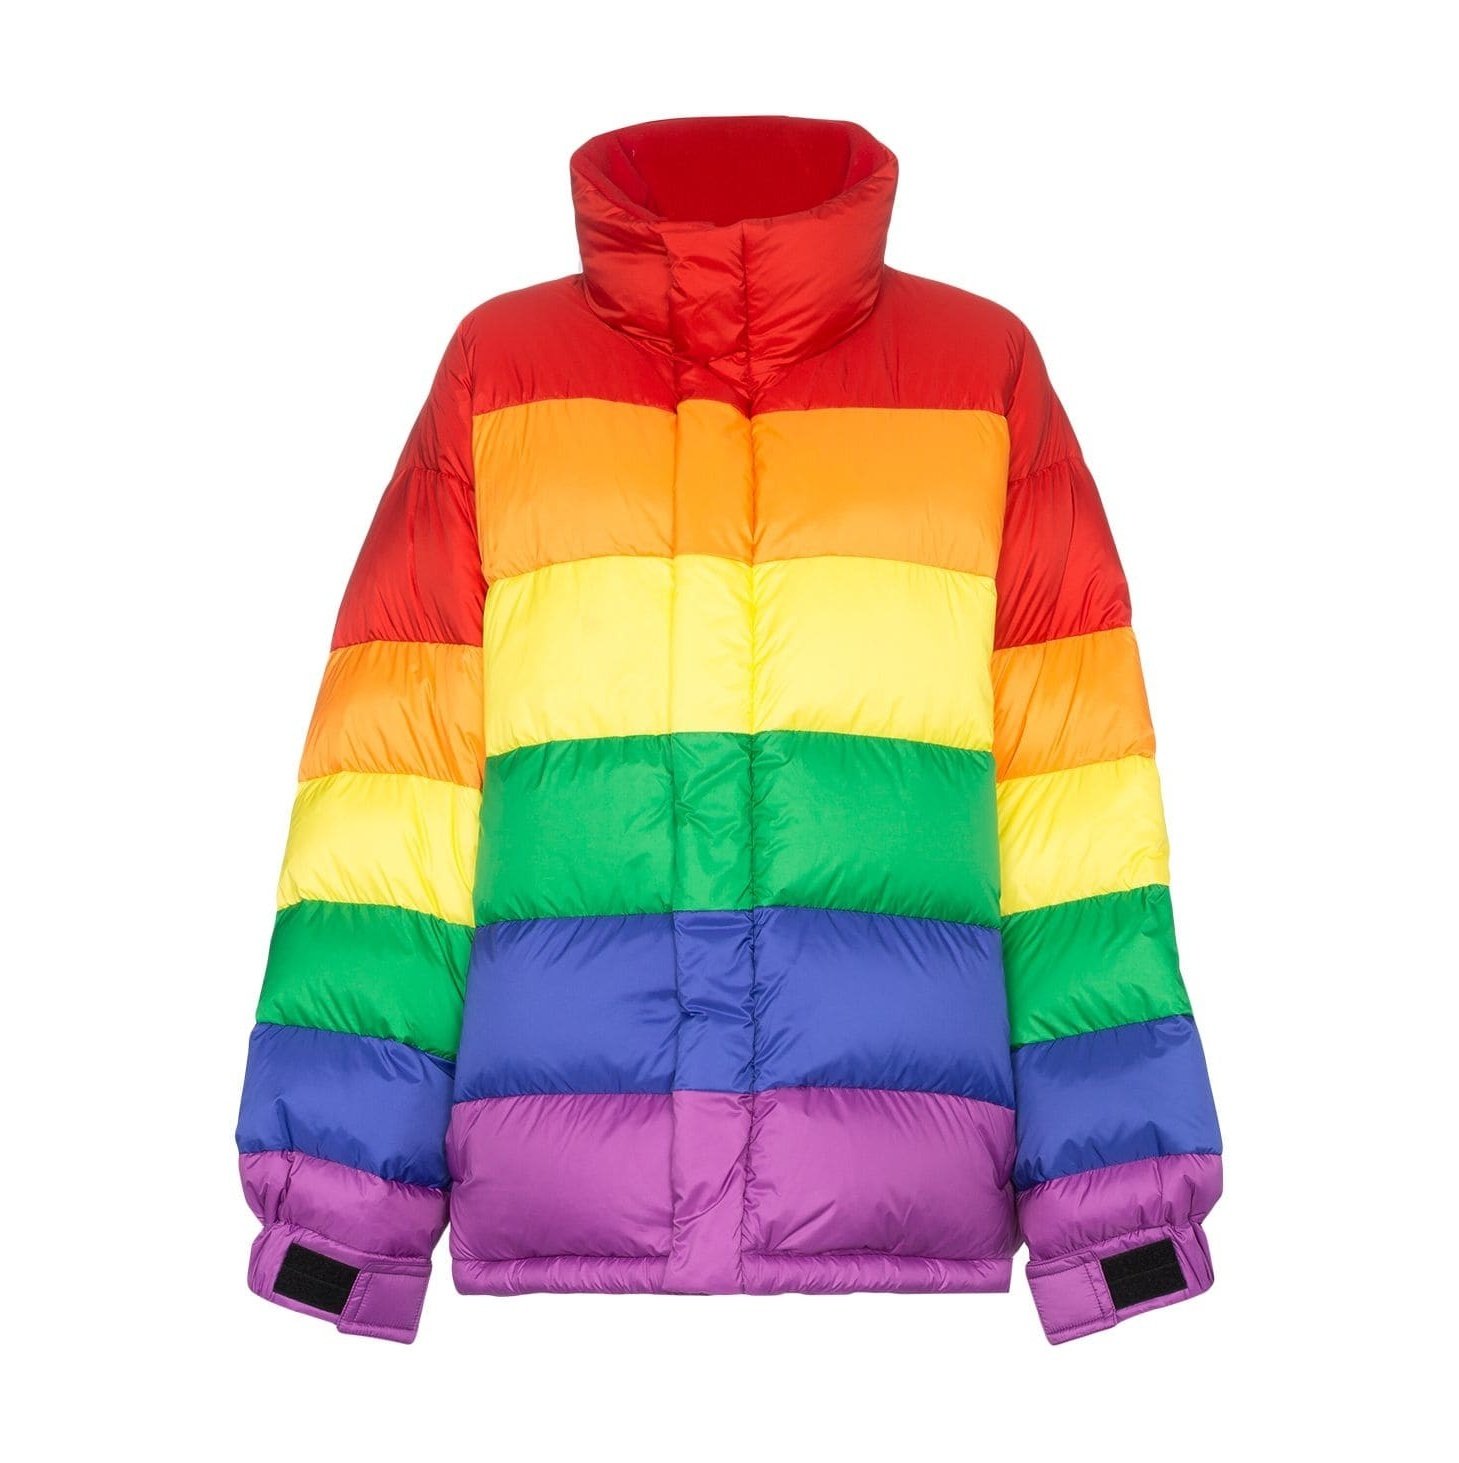 Цветные куртки купить. Яркая куртка. Разноцветная куртка. Разноцветный пуховик. Куртка разноцветная женская.